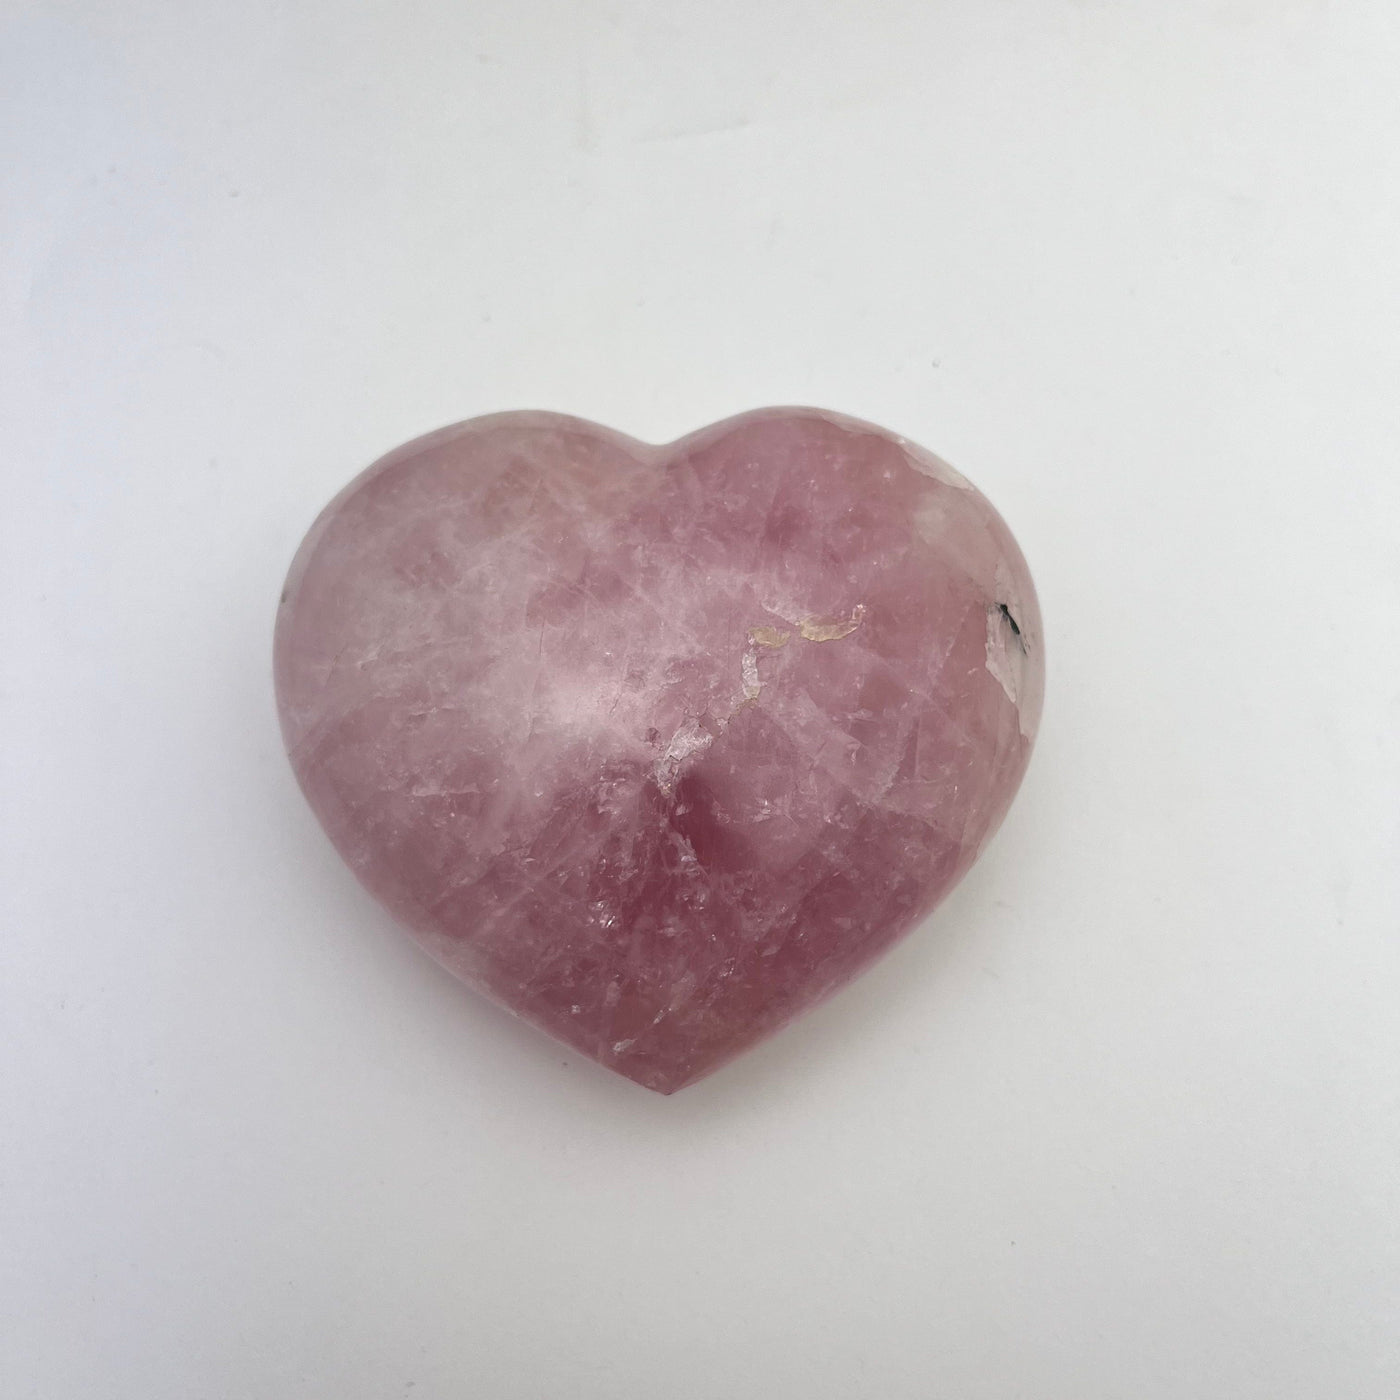 Polished Rose Quartz Heart - back side 